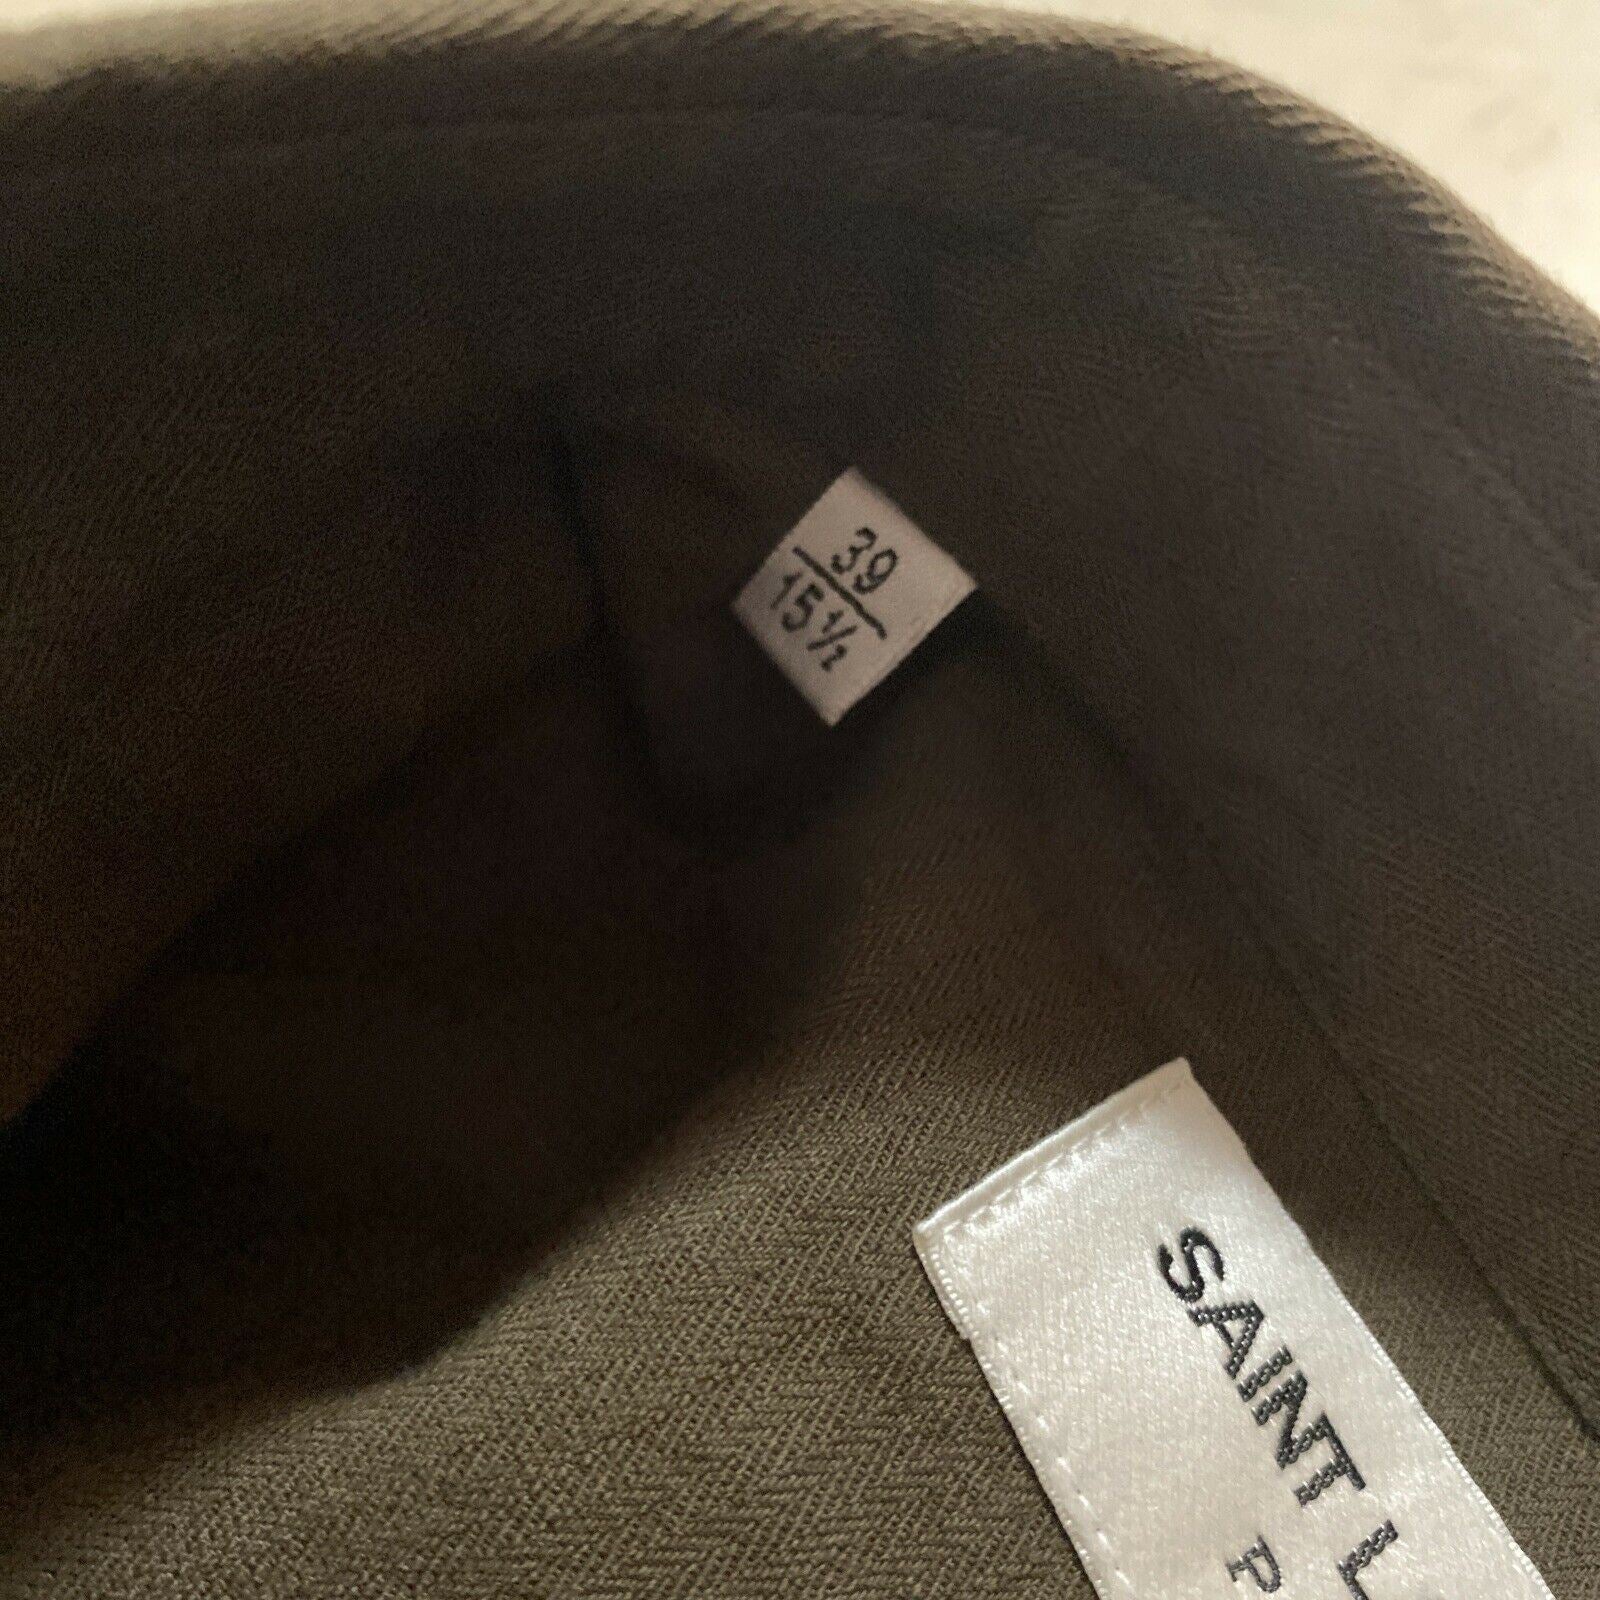 Neu mit Etikett: 1490 $ Saint Laurent Herren Westernhemd Grün S (38/15) Italien